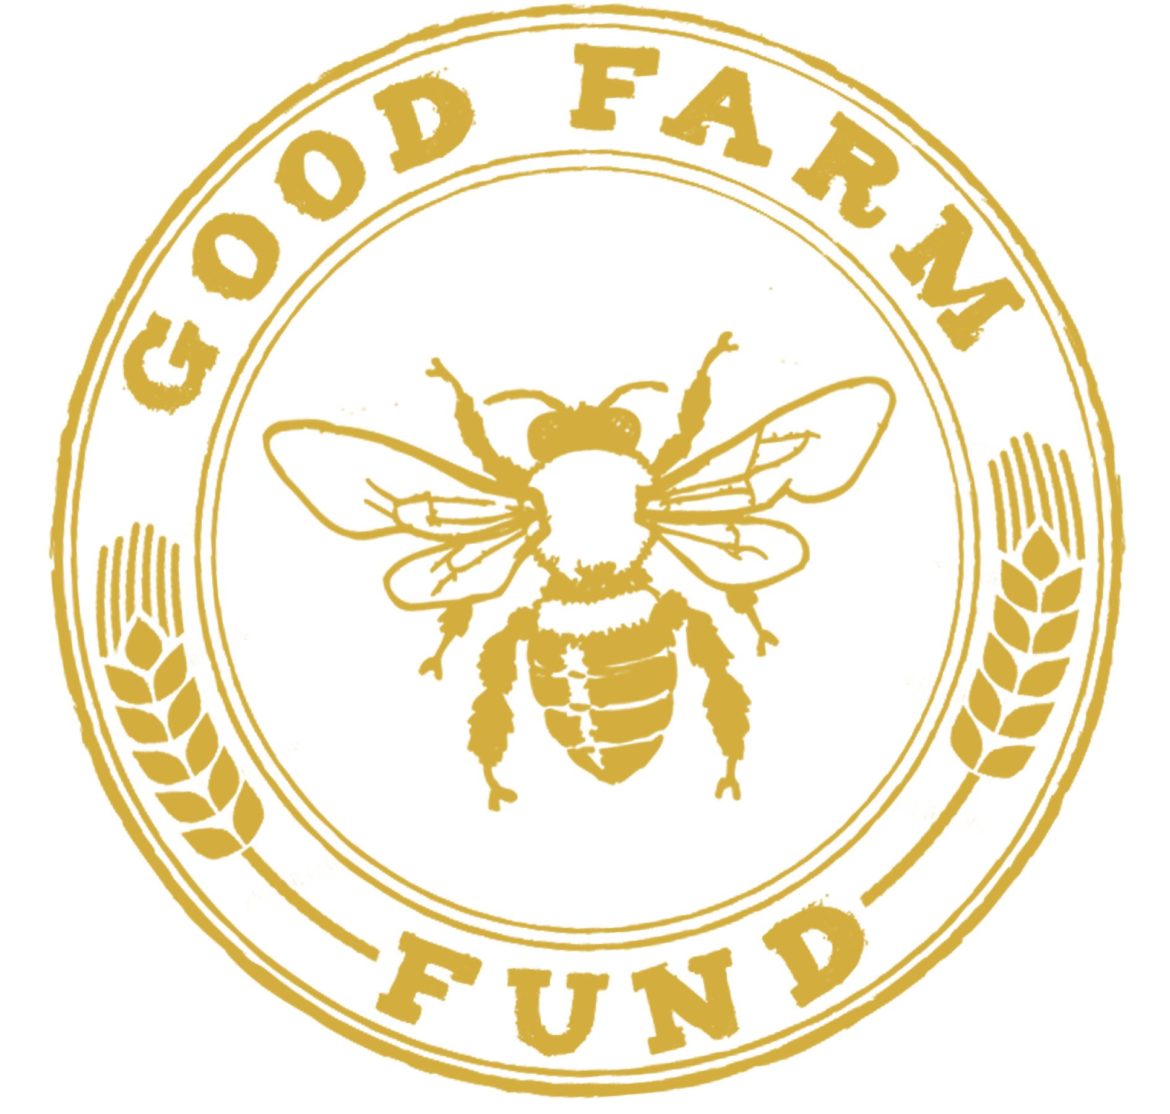 The Good Farm Fund logo